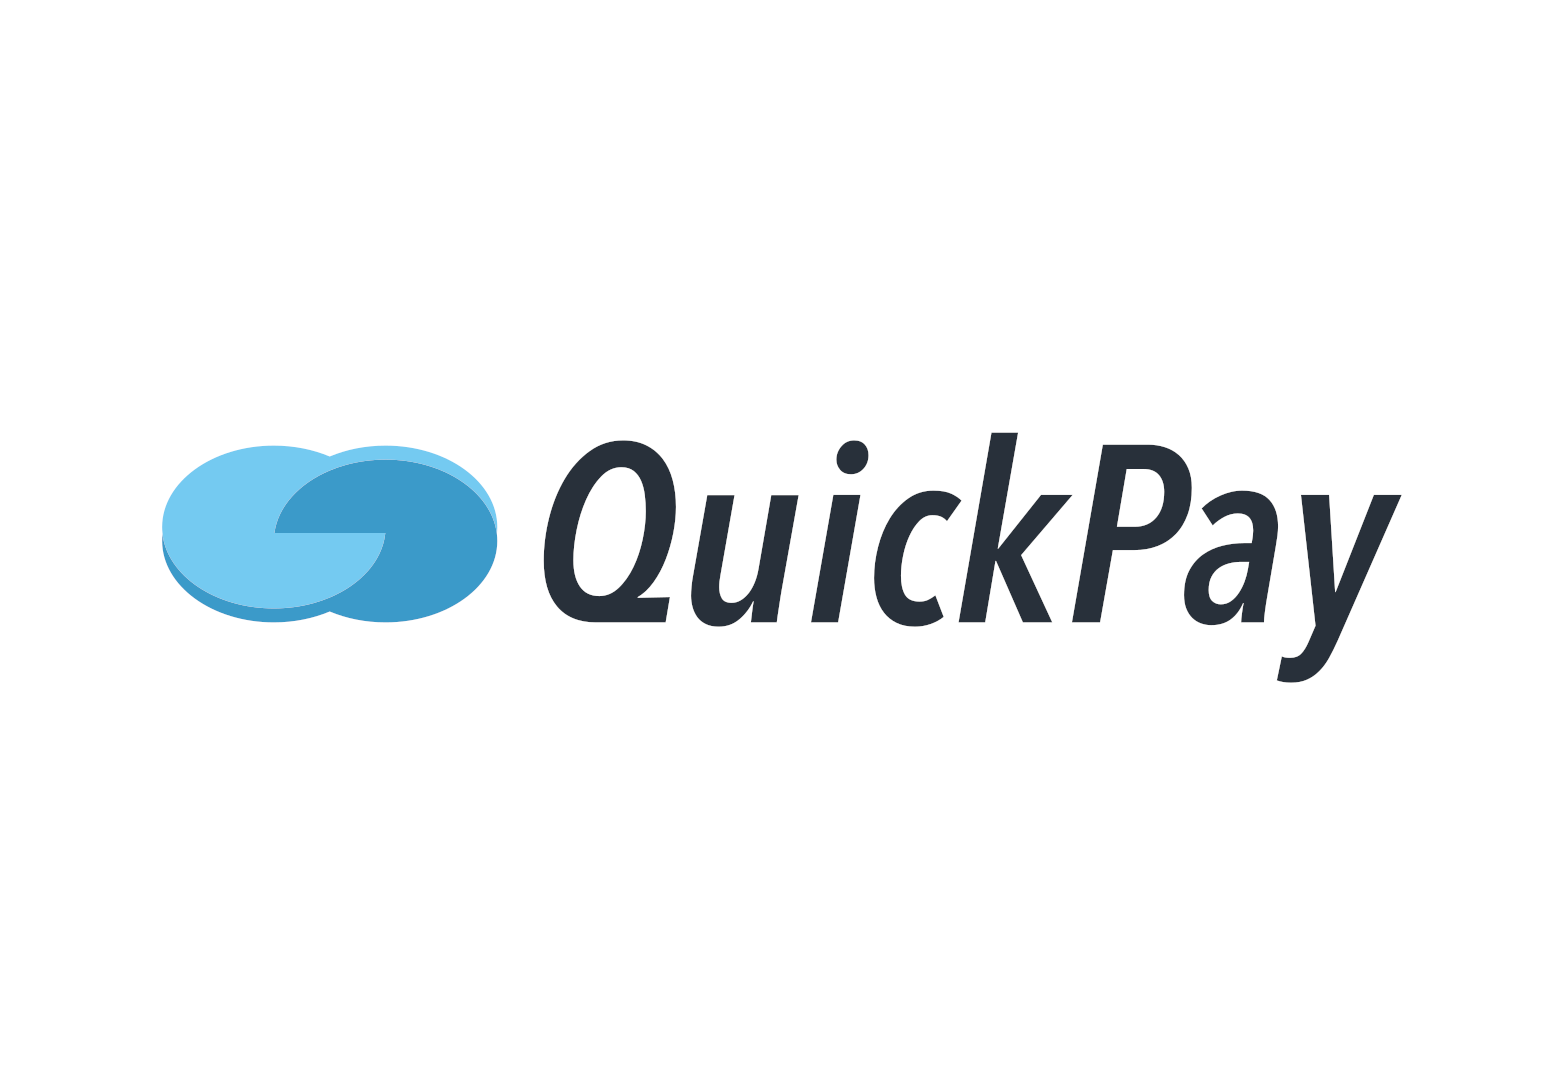 Квик пей. Quickpay. Quickpay (Квикпэй). Quick pay logo. Quickpay kg PNG.